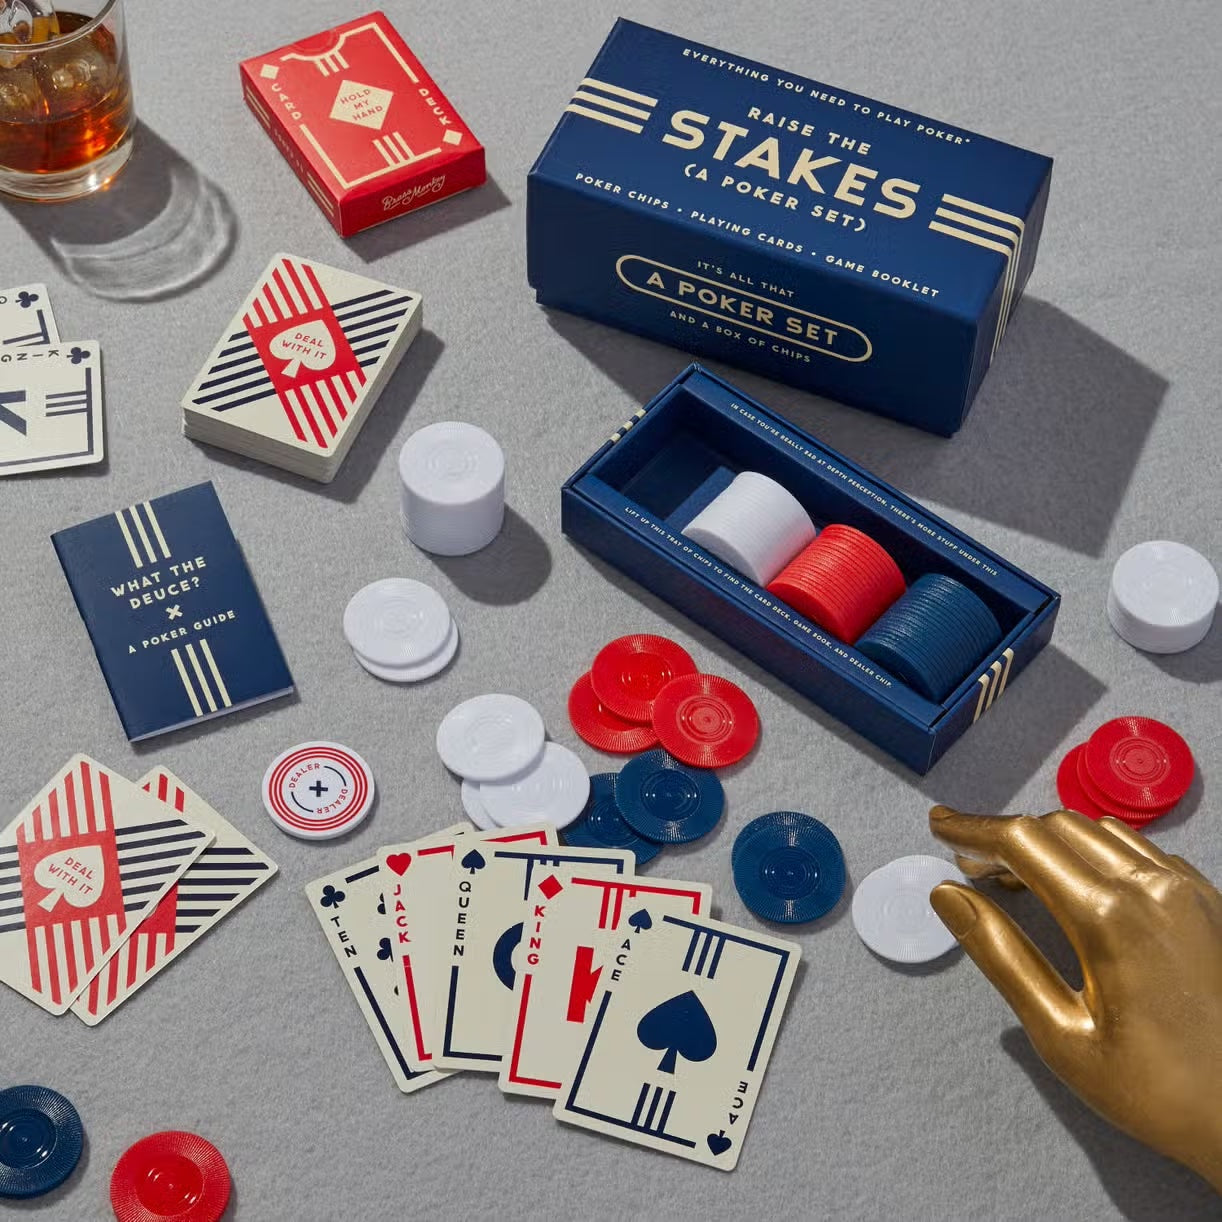 Raise the Stakes: Poker Game Set